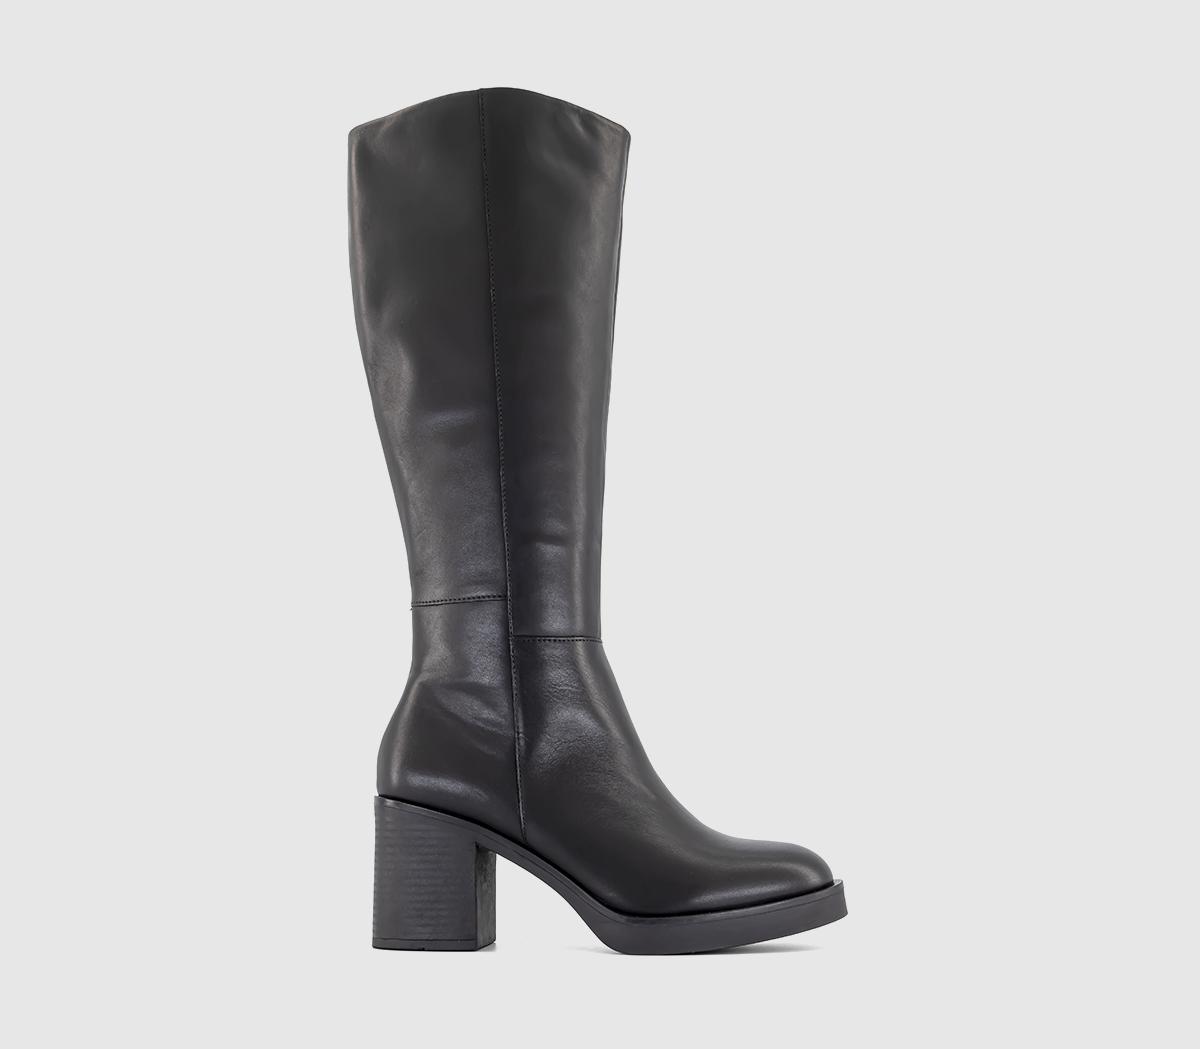 OFFICEKoda Platform Heeled Knee BootsBlack Leather